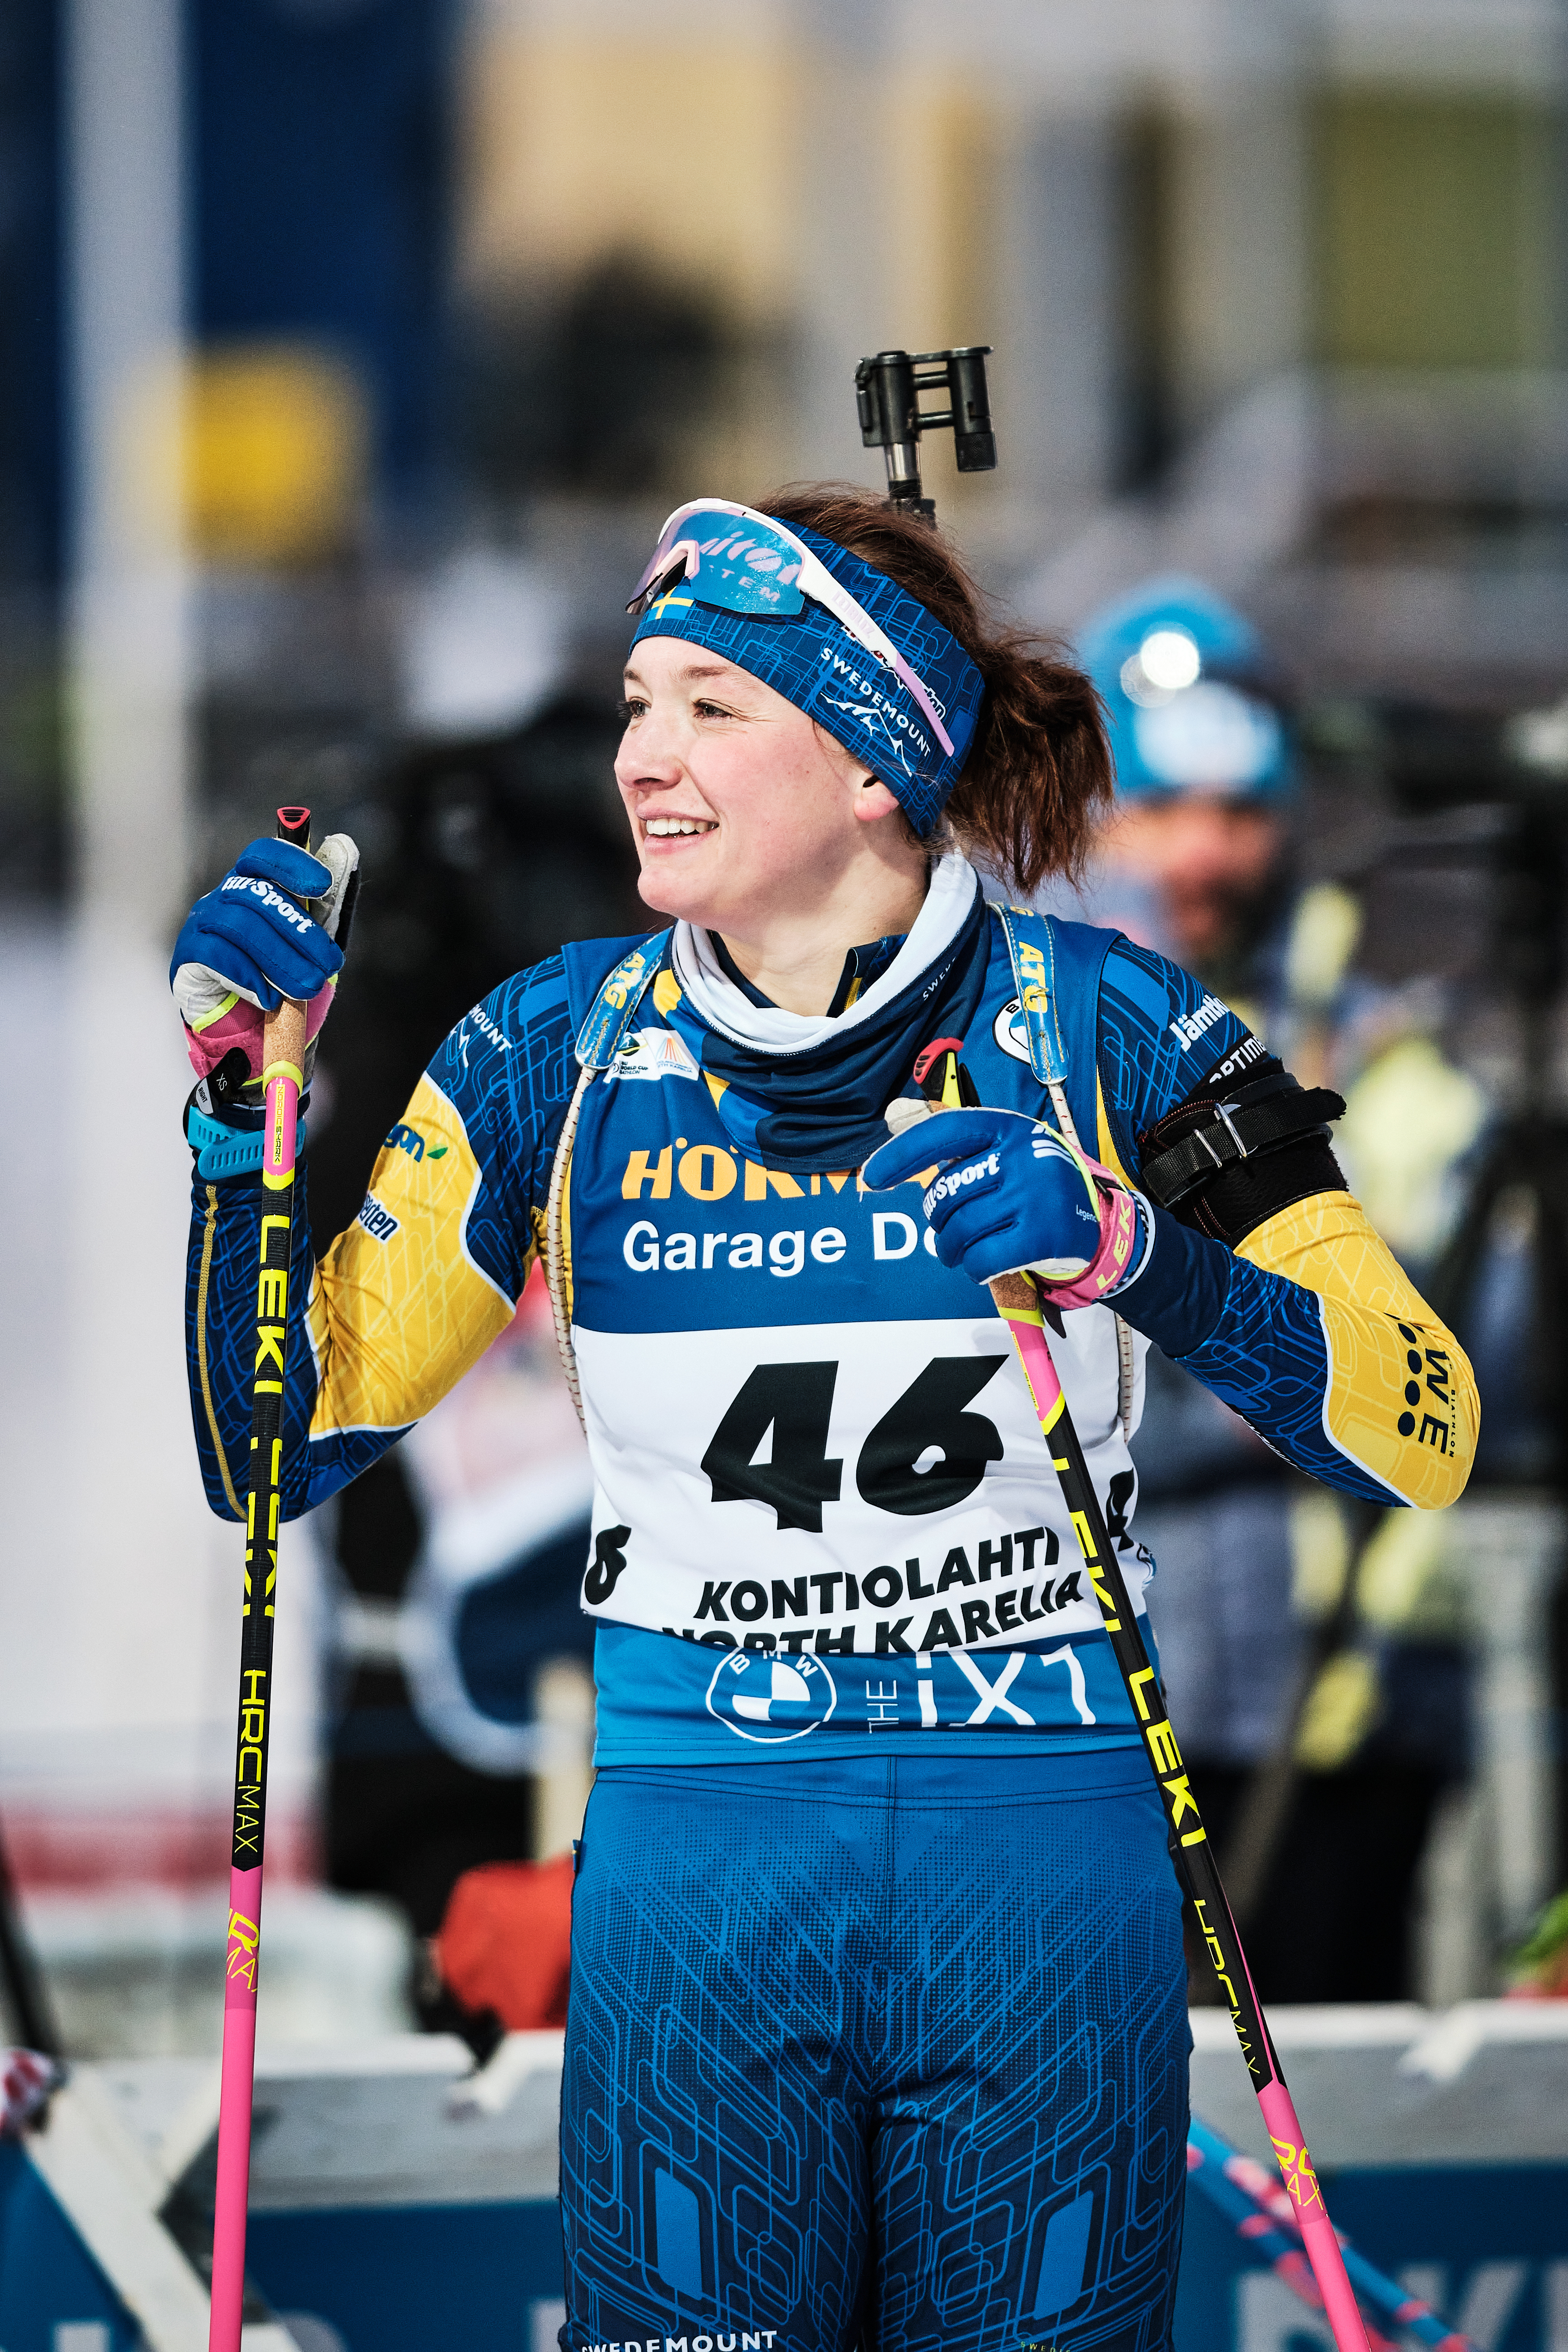 Lisa Theresa Hauser : Être un modèle pour les jeunes - Biathlon Live